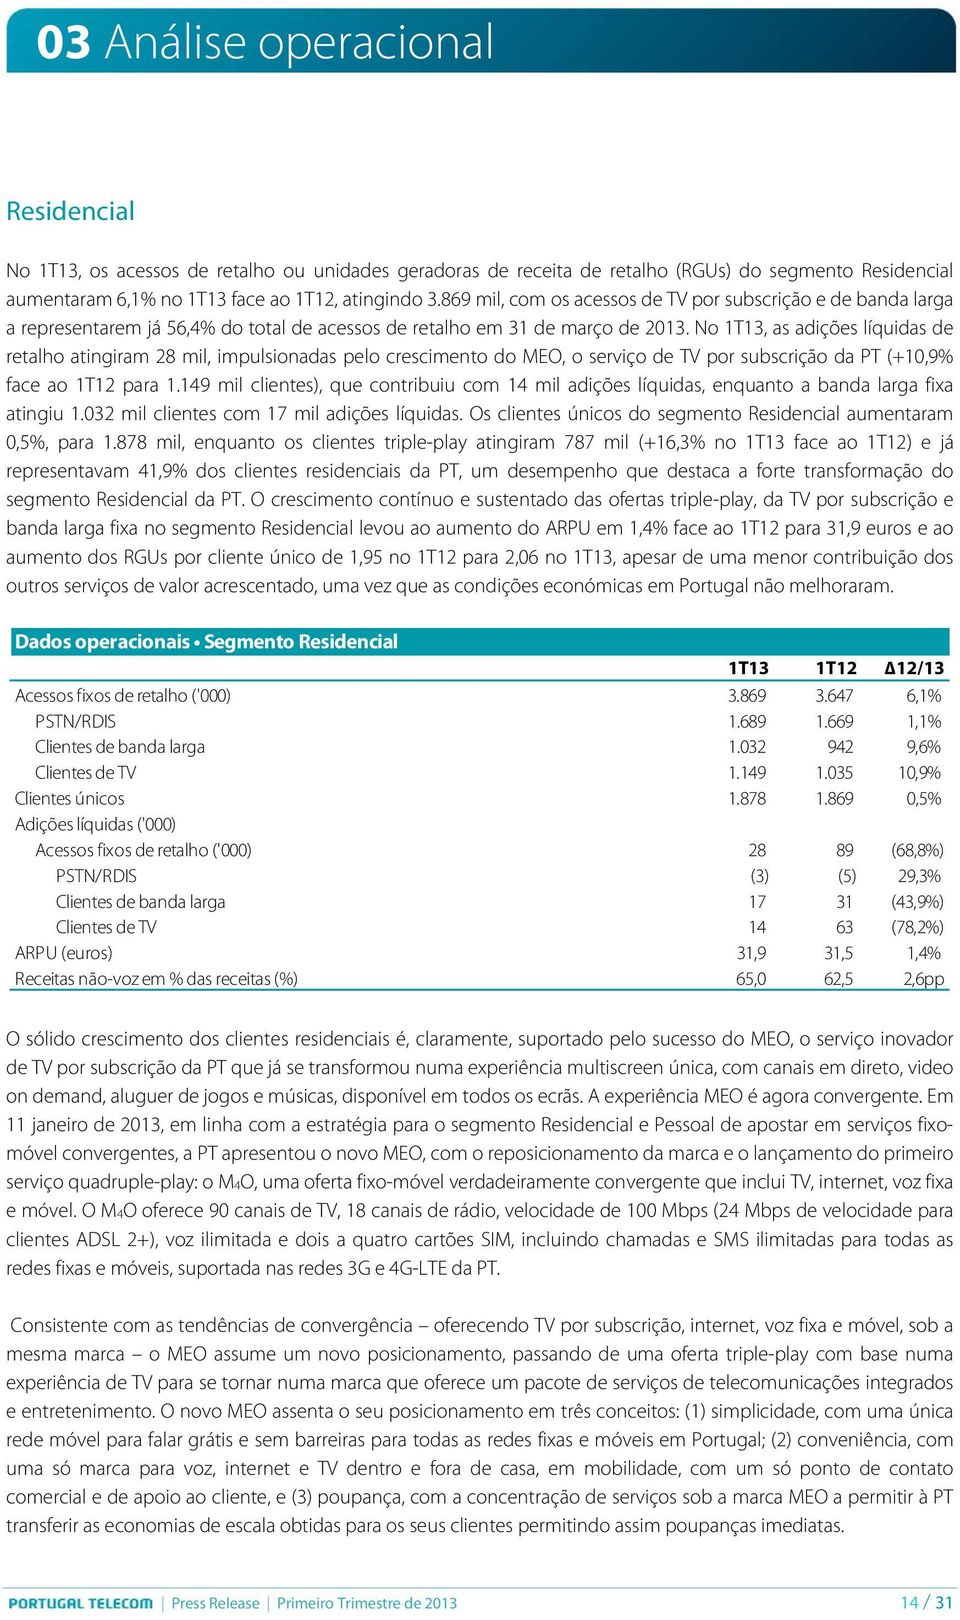 No 1T13, as adições líquidas de retalho atingiram 28 mil, impulsionadas pelo crescimento do MEO, o serviço de TV por subscrição da PT (+10,9% face ao 1T12 para 1.